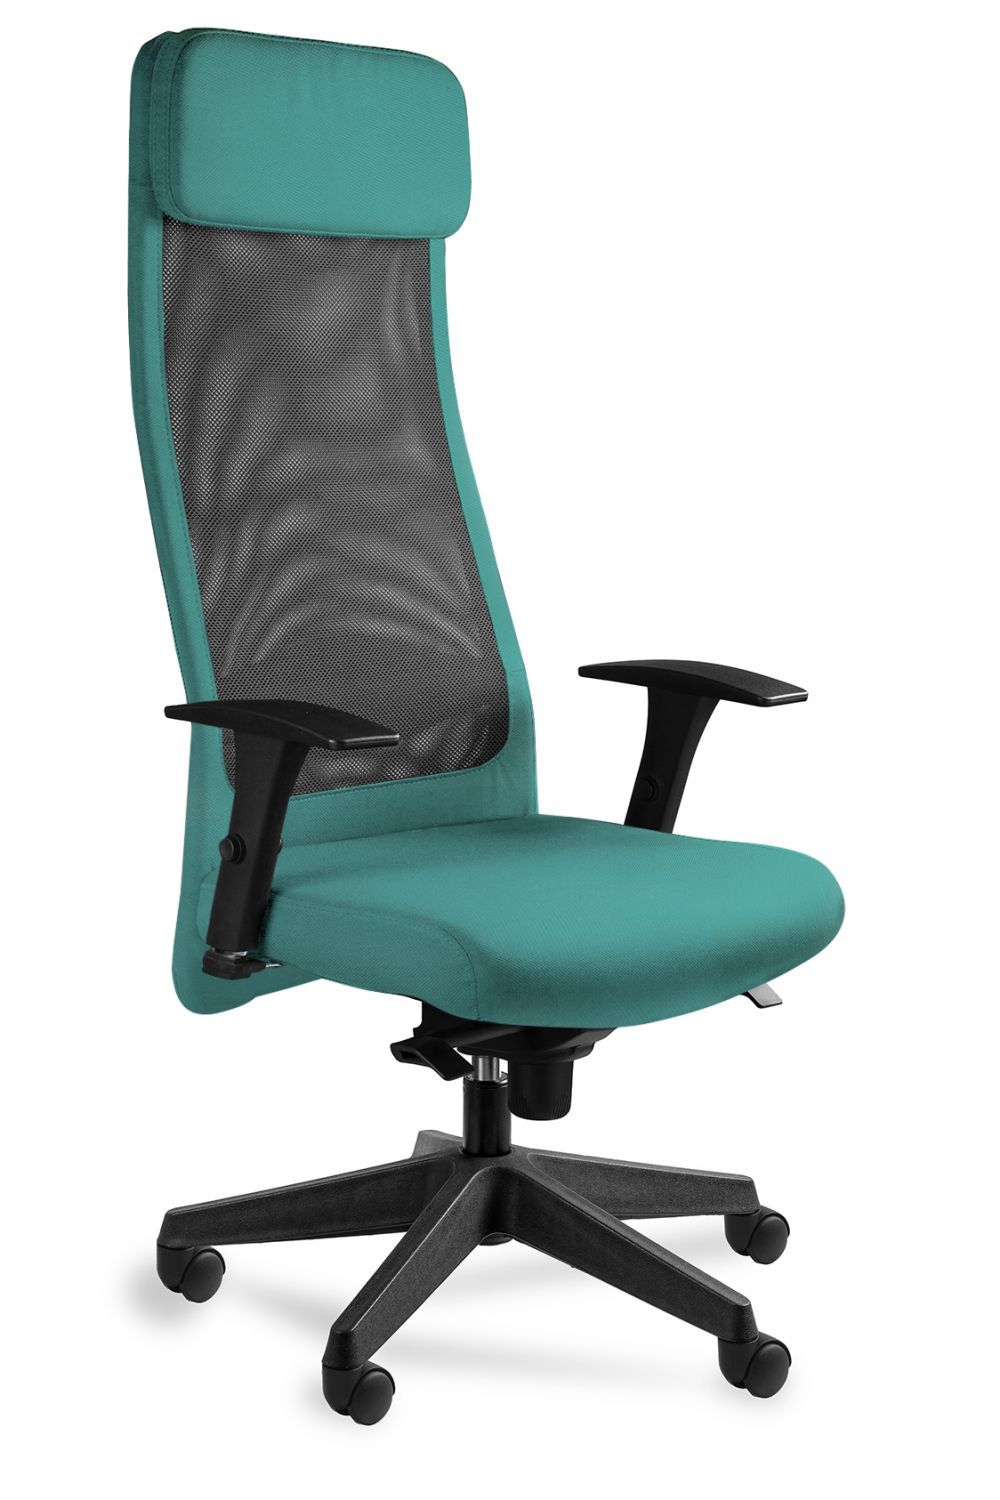 Fotel biurowy, ergonomiczny, Ares Mesh, czarny, tealblue